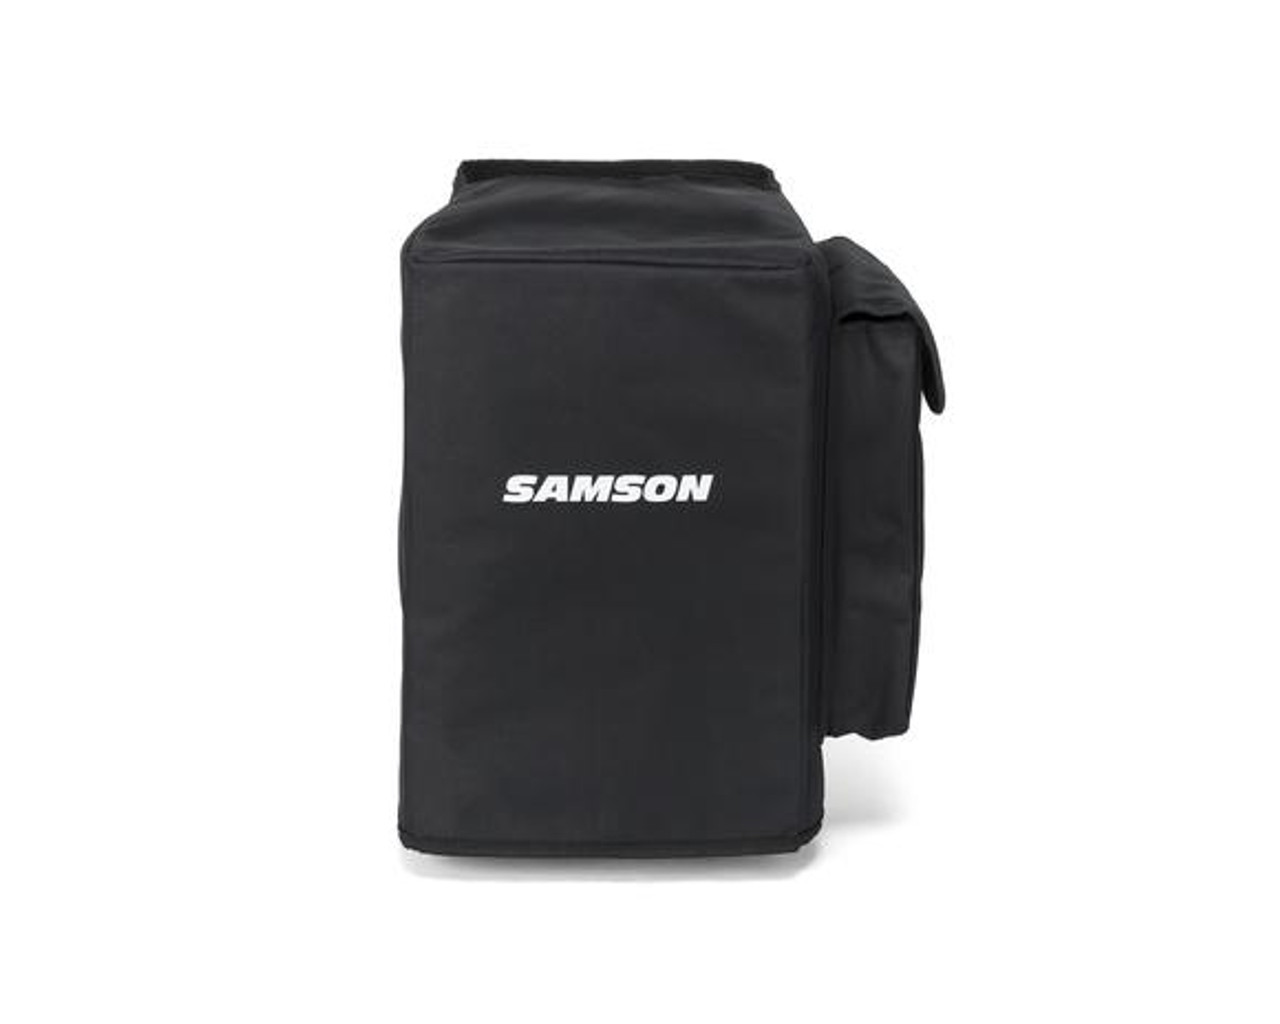 Samson SADC208